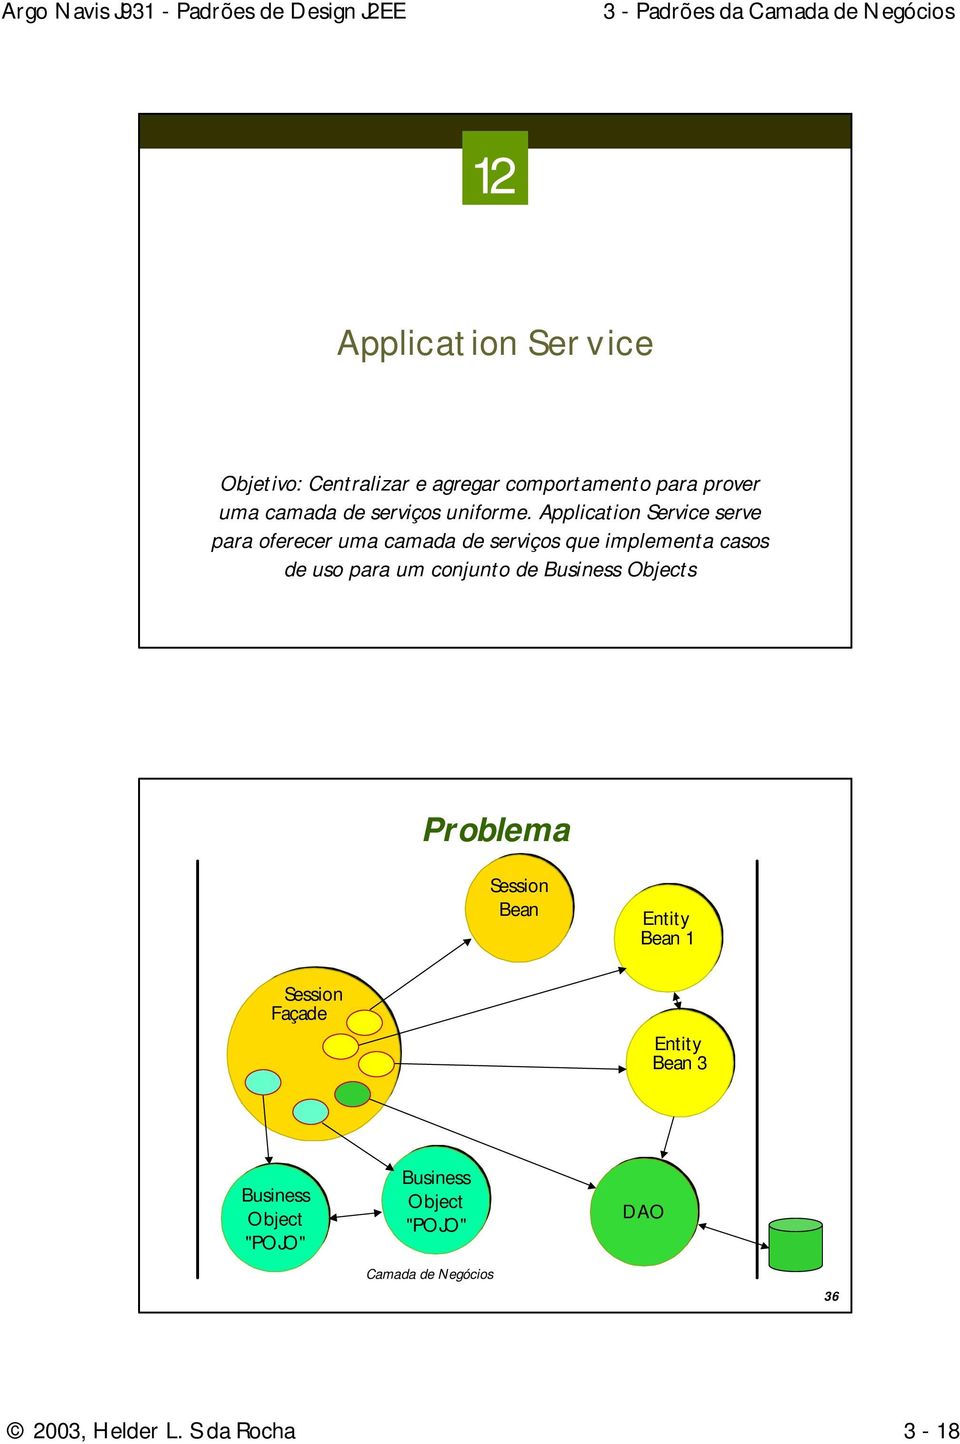 Application Service serve para oferecer uma camada de serviços que implementa casos de uso para um